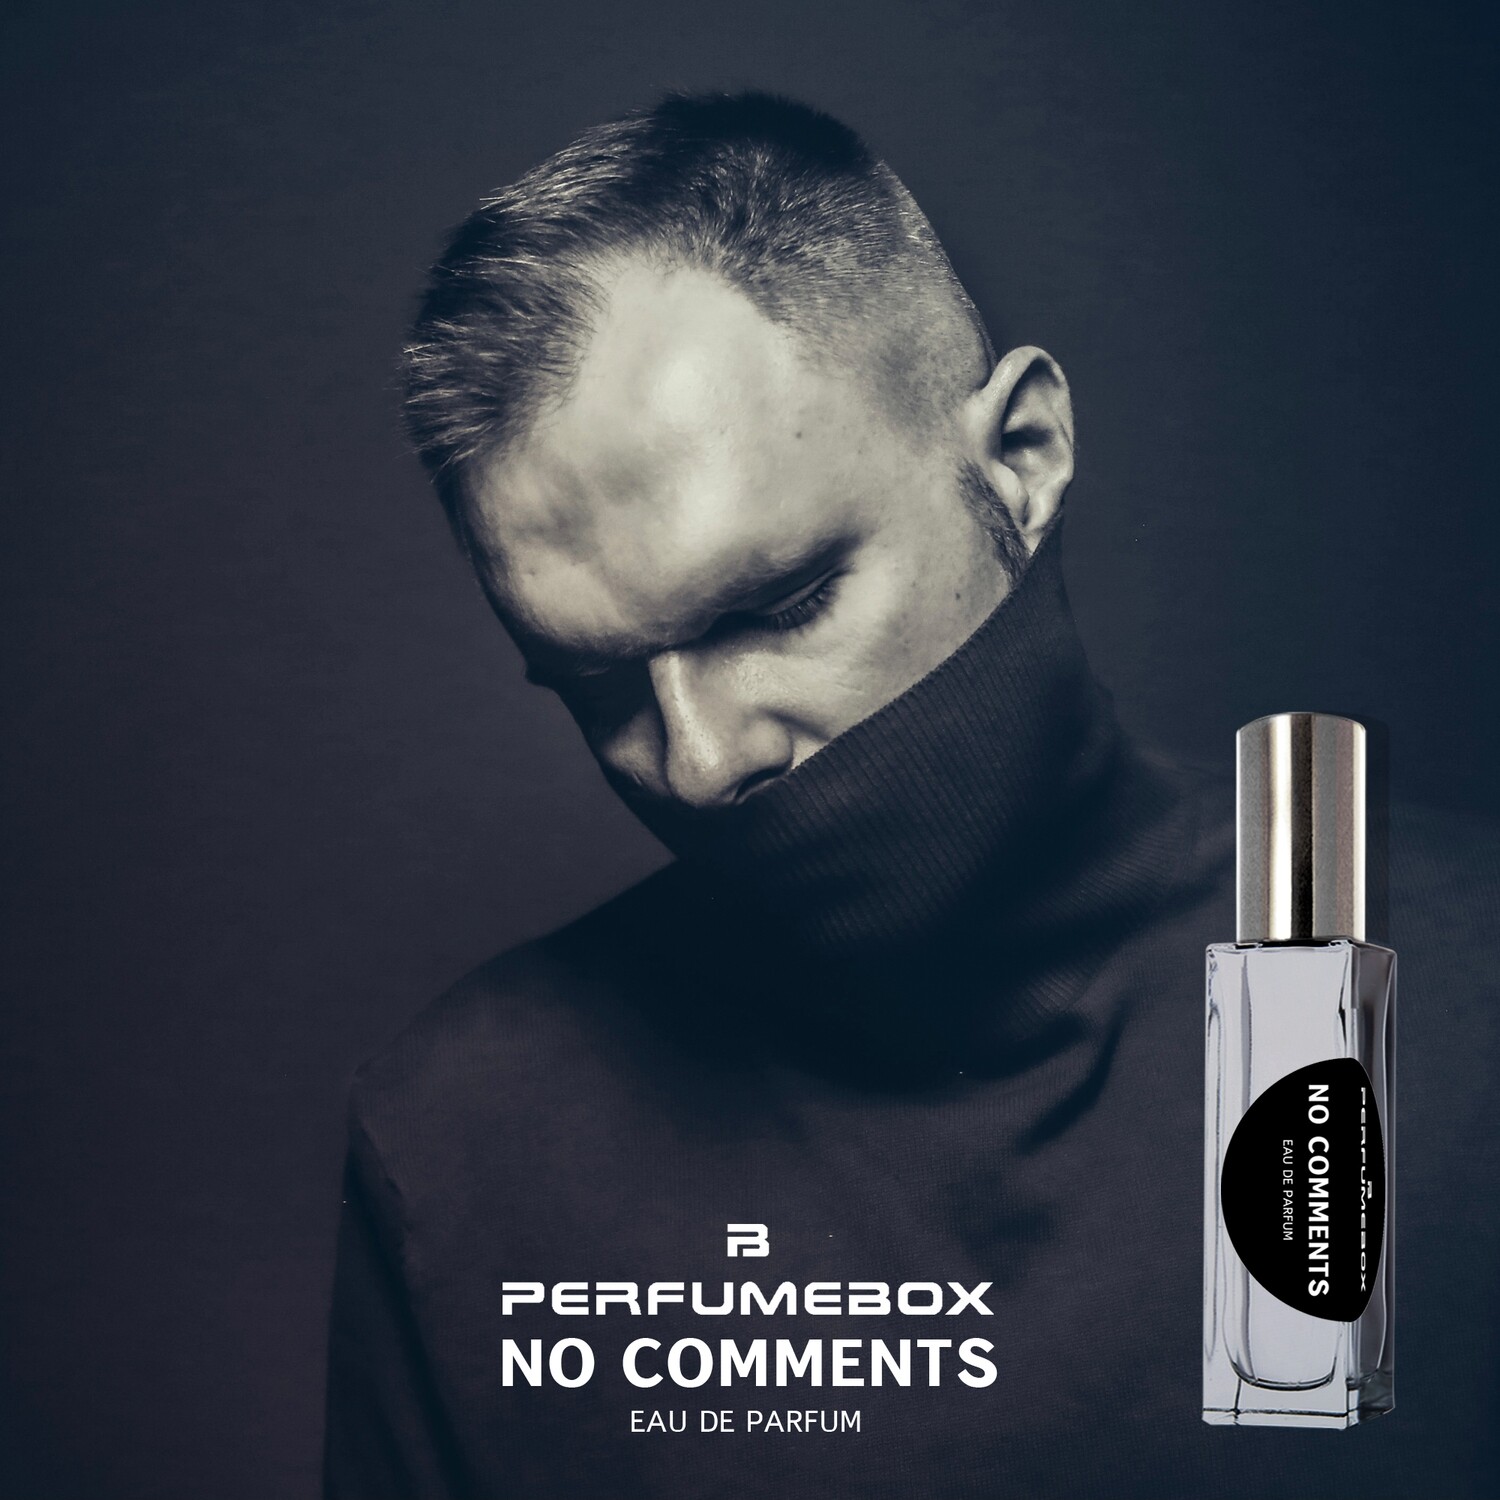 Perfumebox No Comments eau de parfum